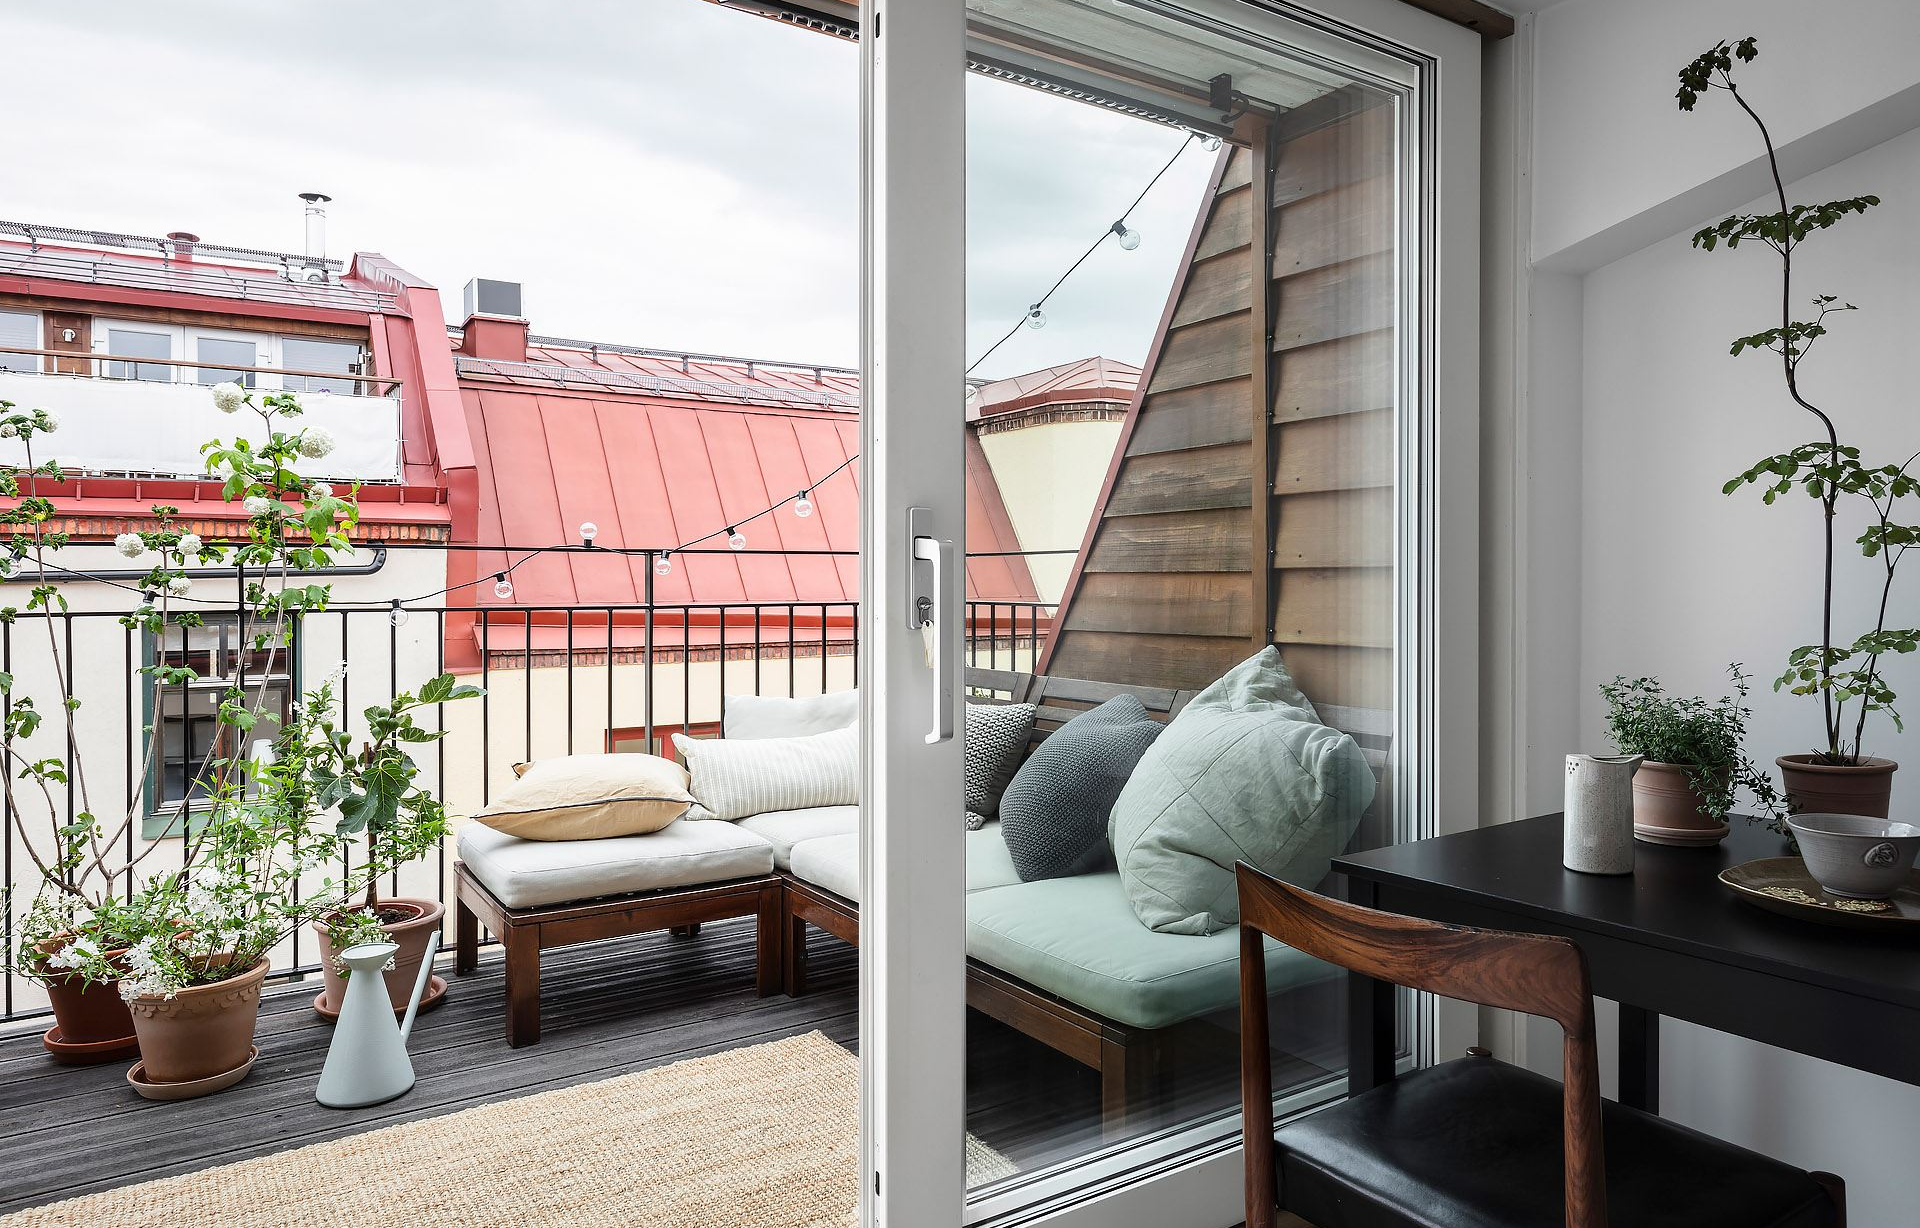 Дизайн интерьера маленького балкона - проекты, фото, идеи небольших балконов